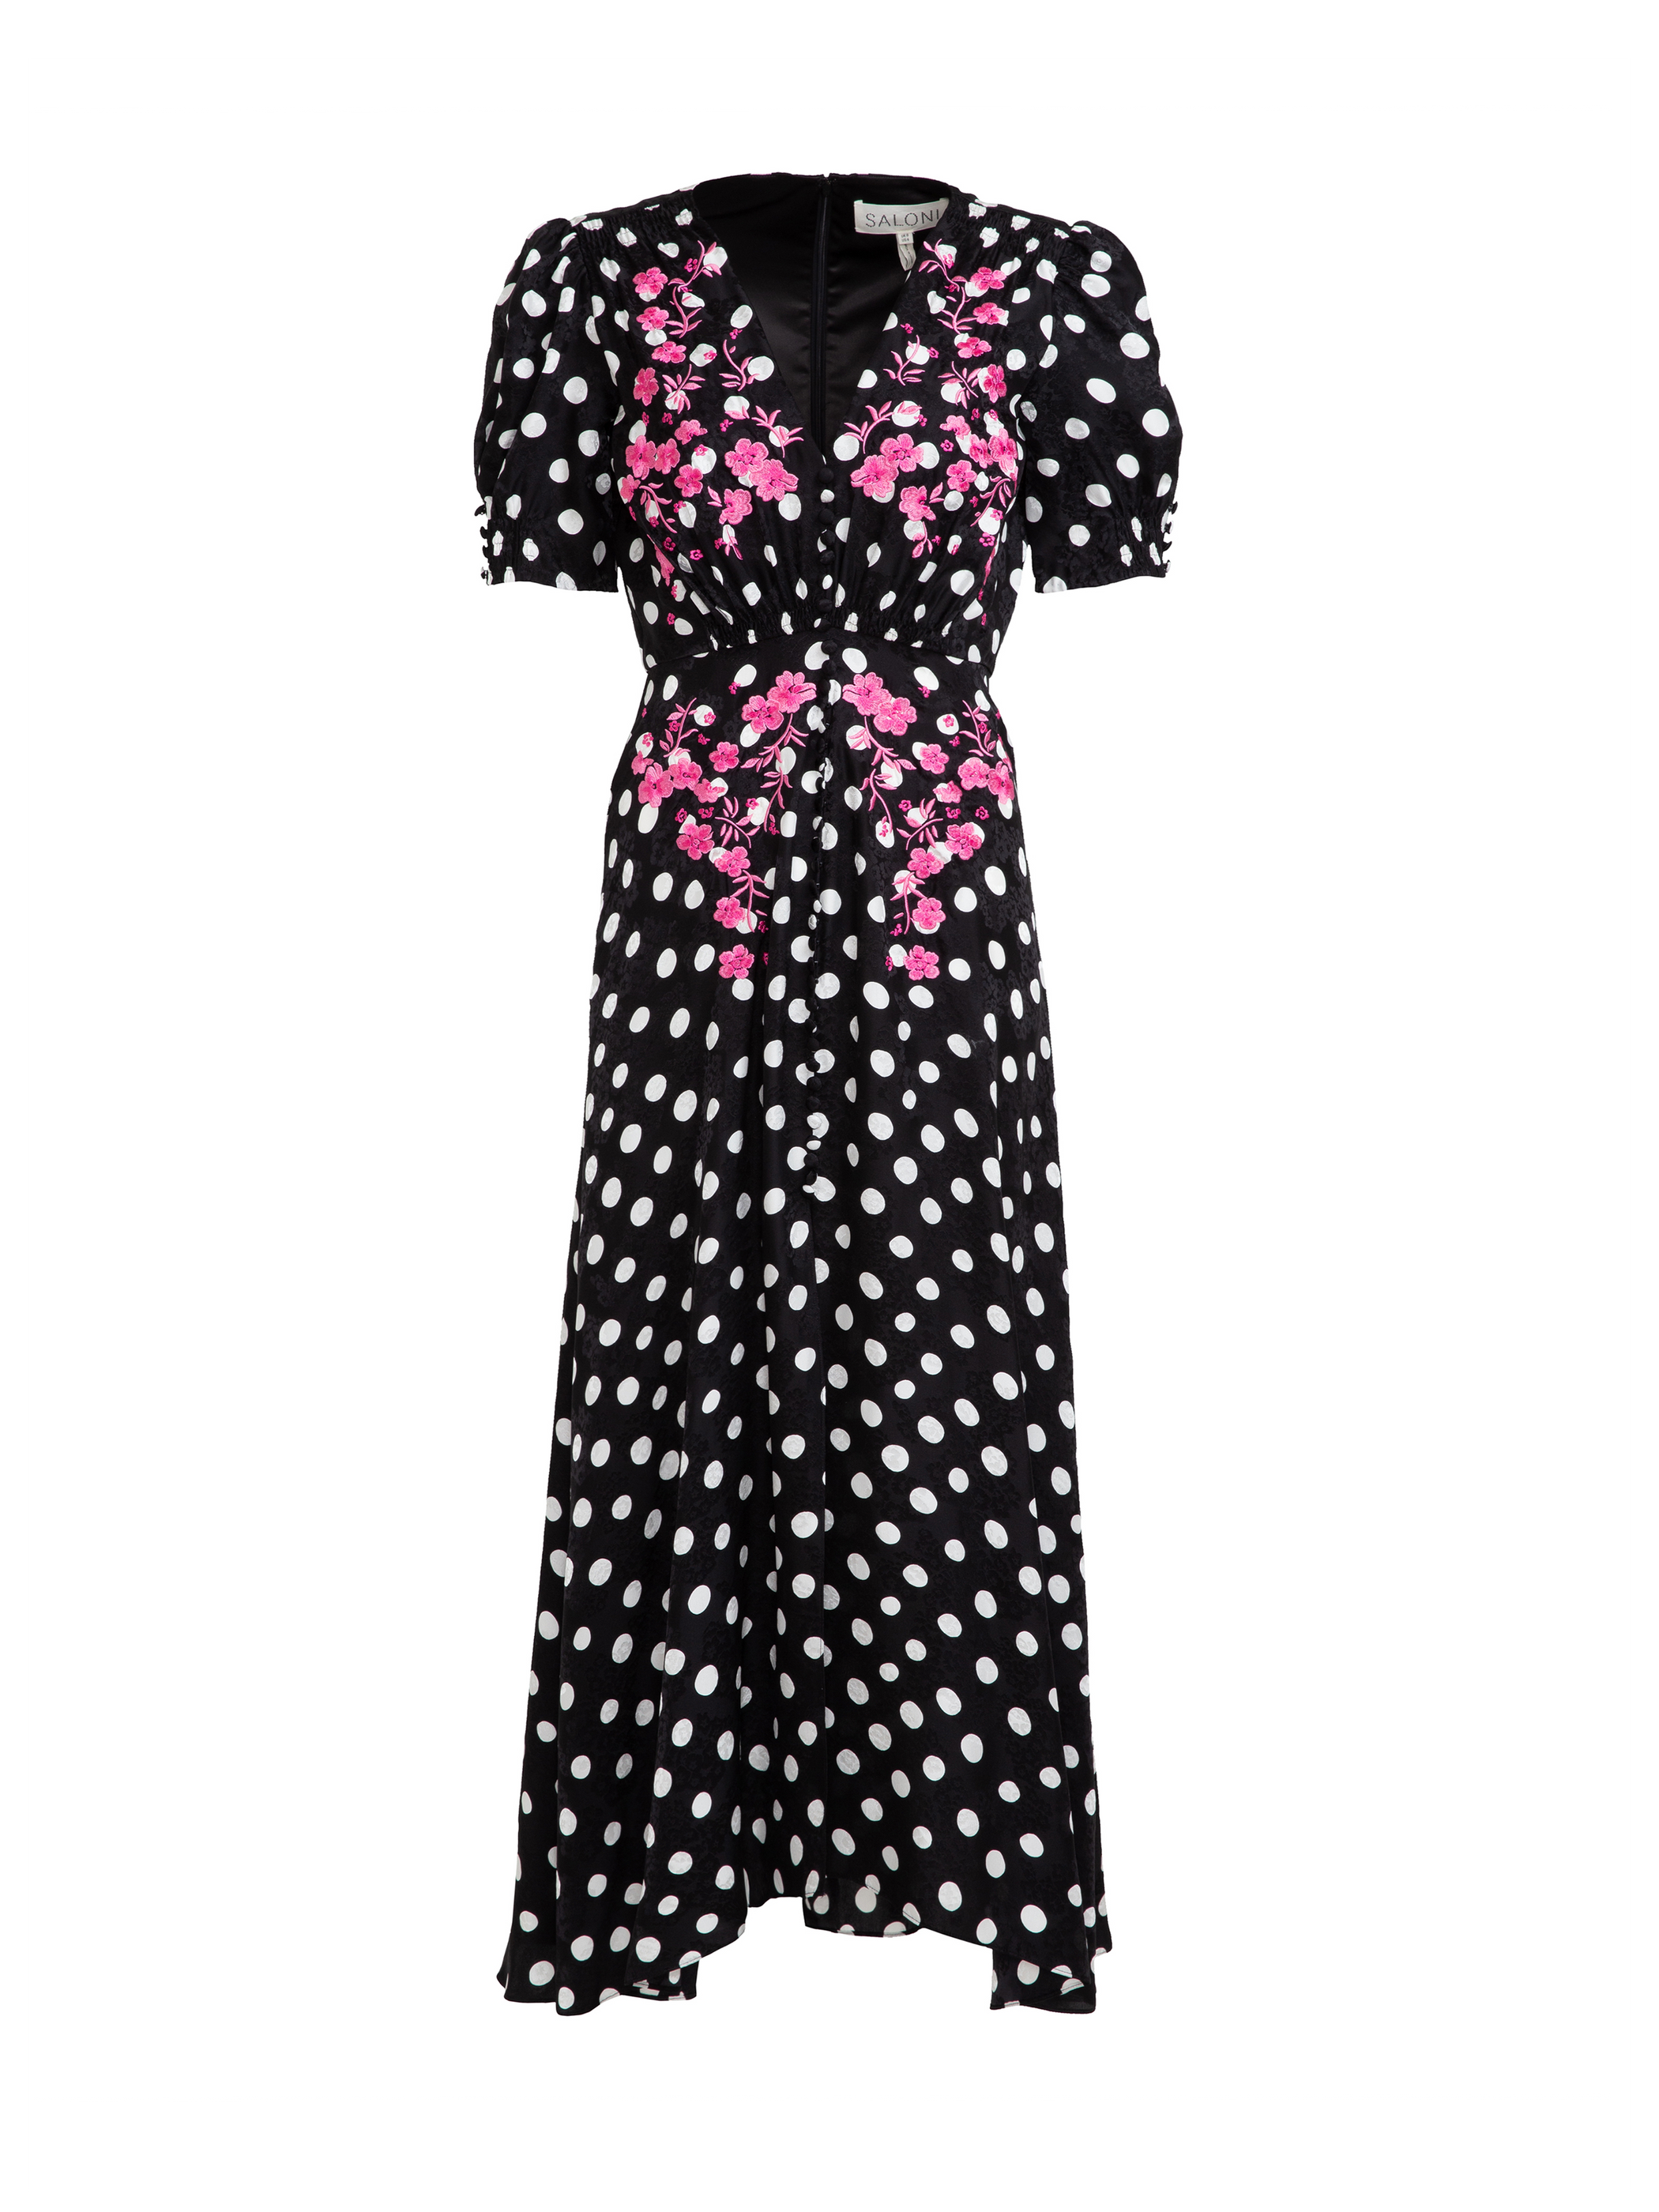 Lea Long Dress in Polka Dot Flower Embroidery